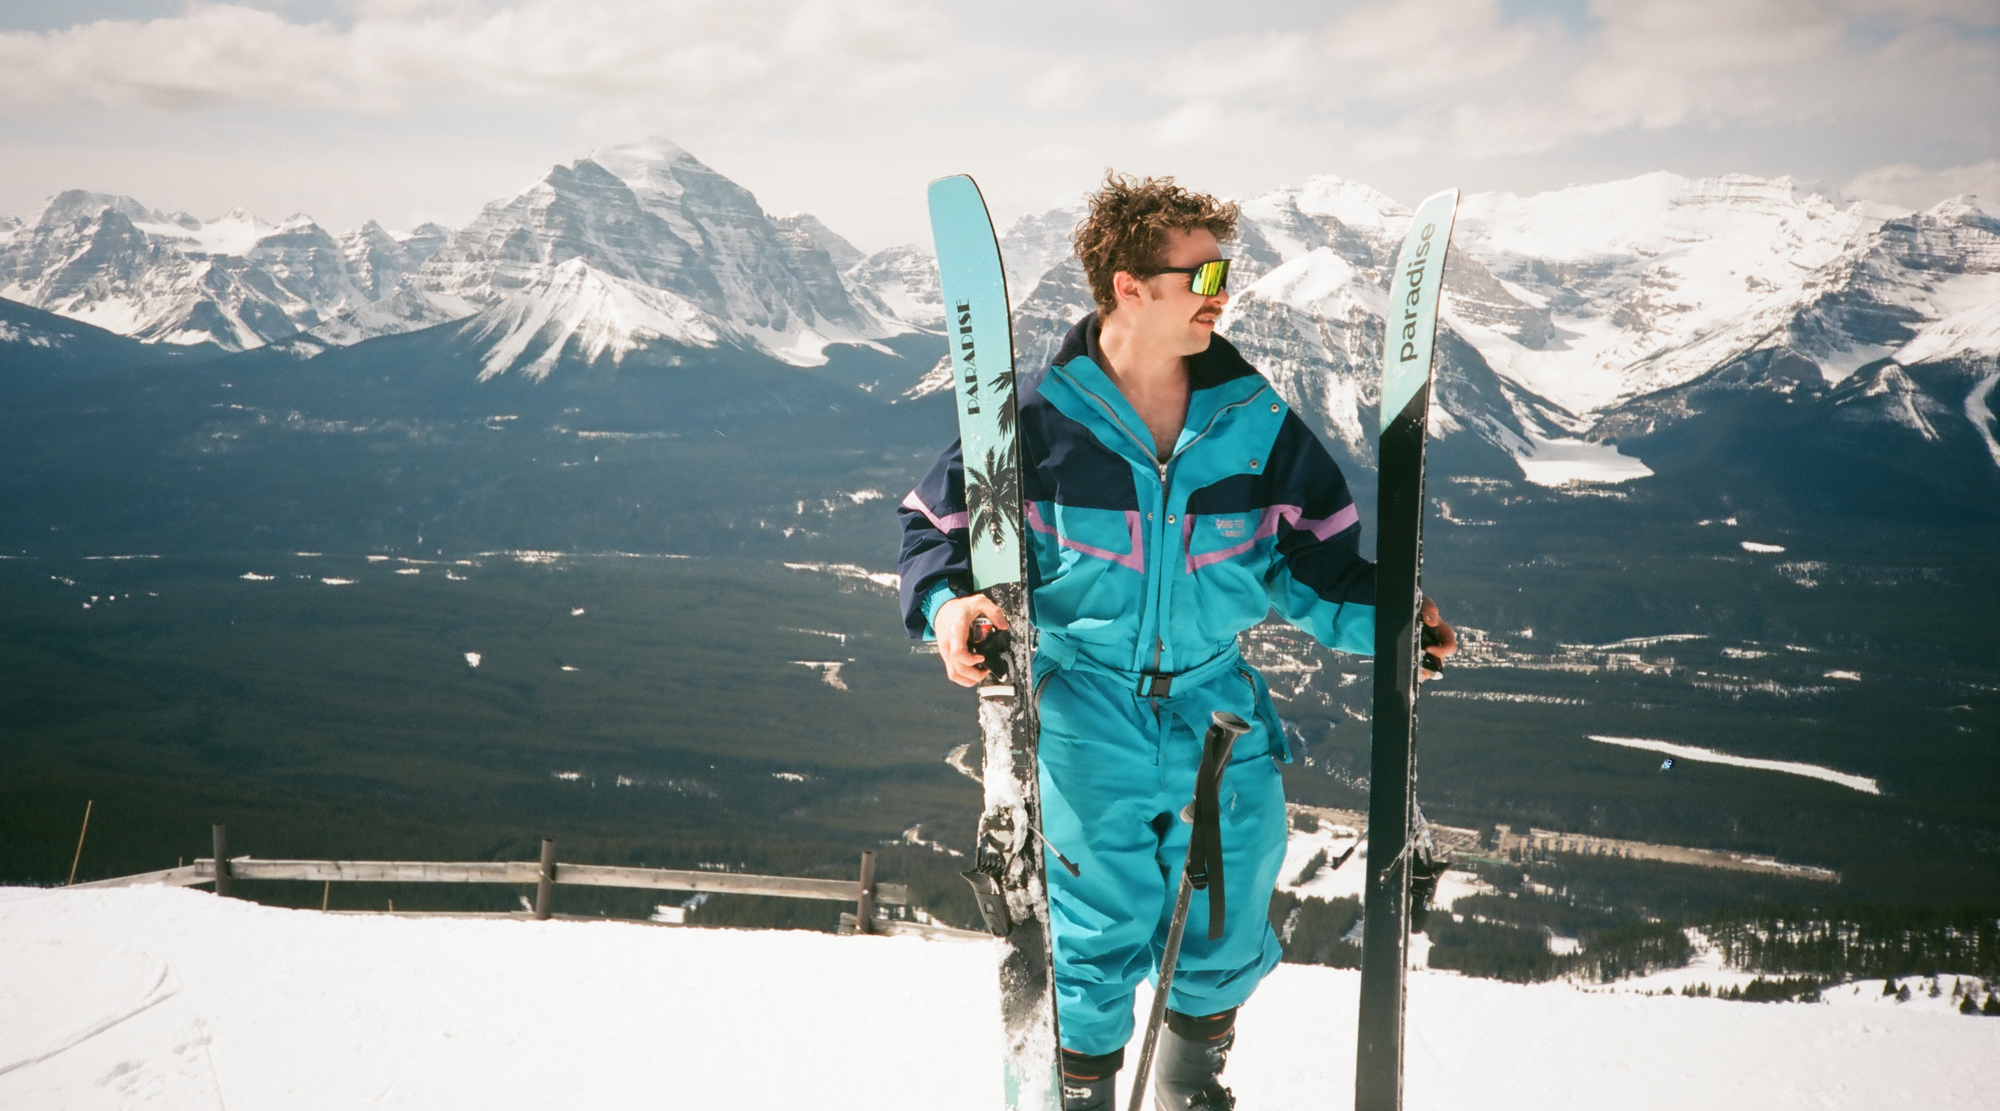 VICE 97 with retro ski suit at Lake Louise Ski Resort, Alberta, Canada